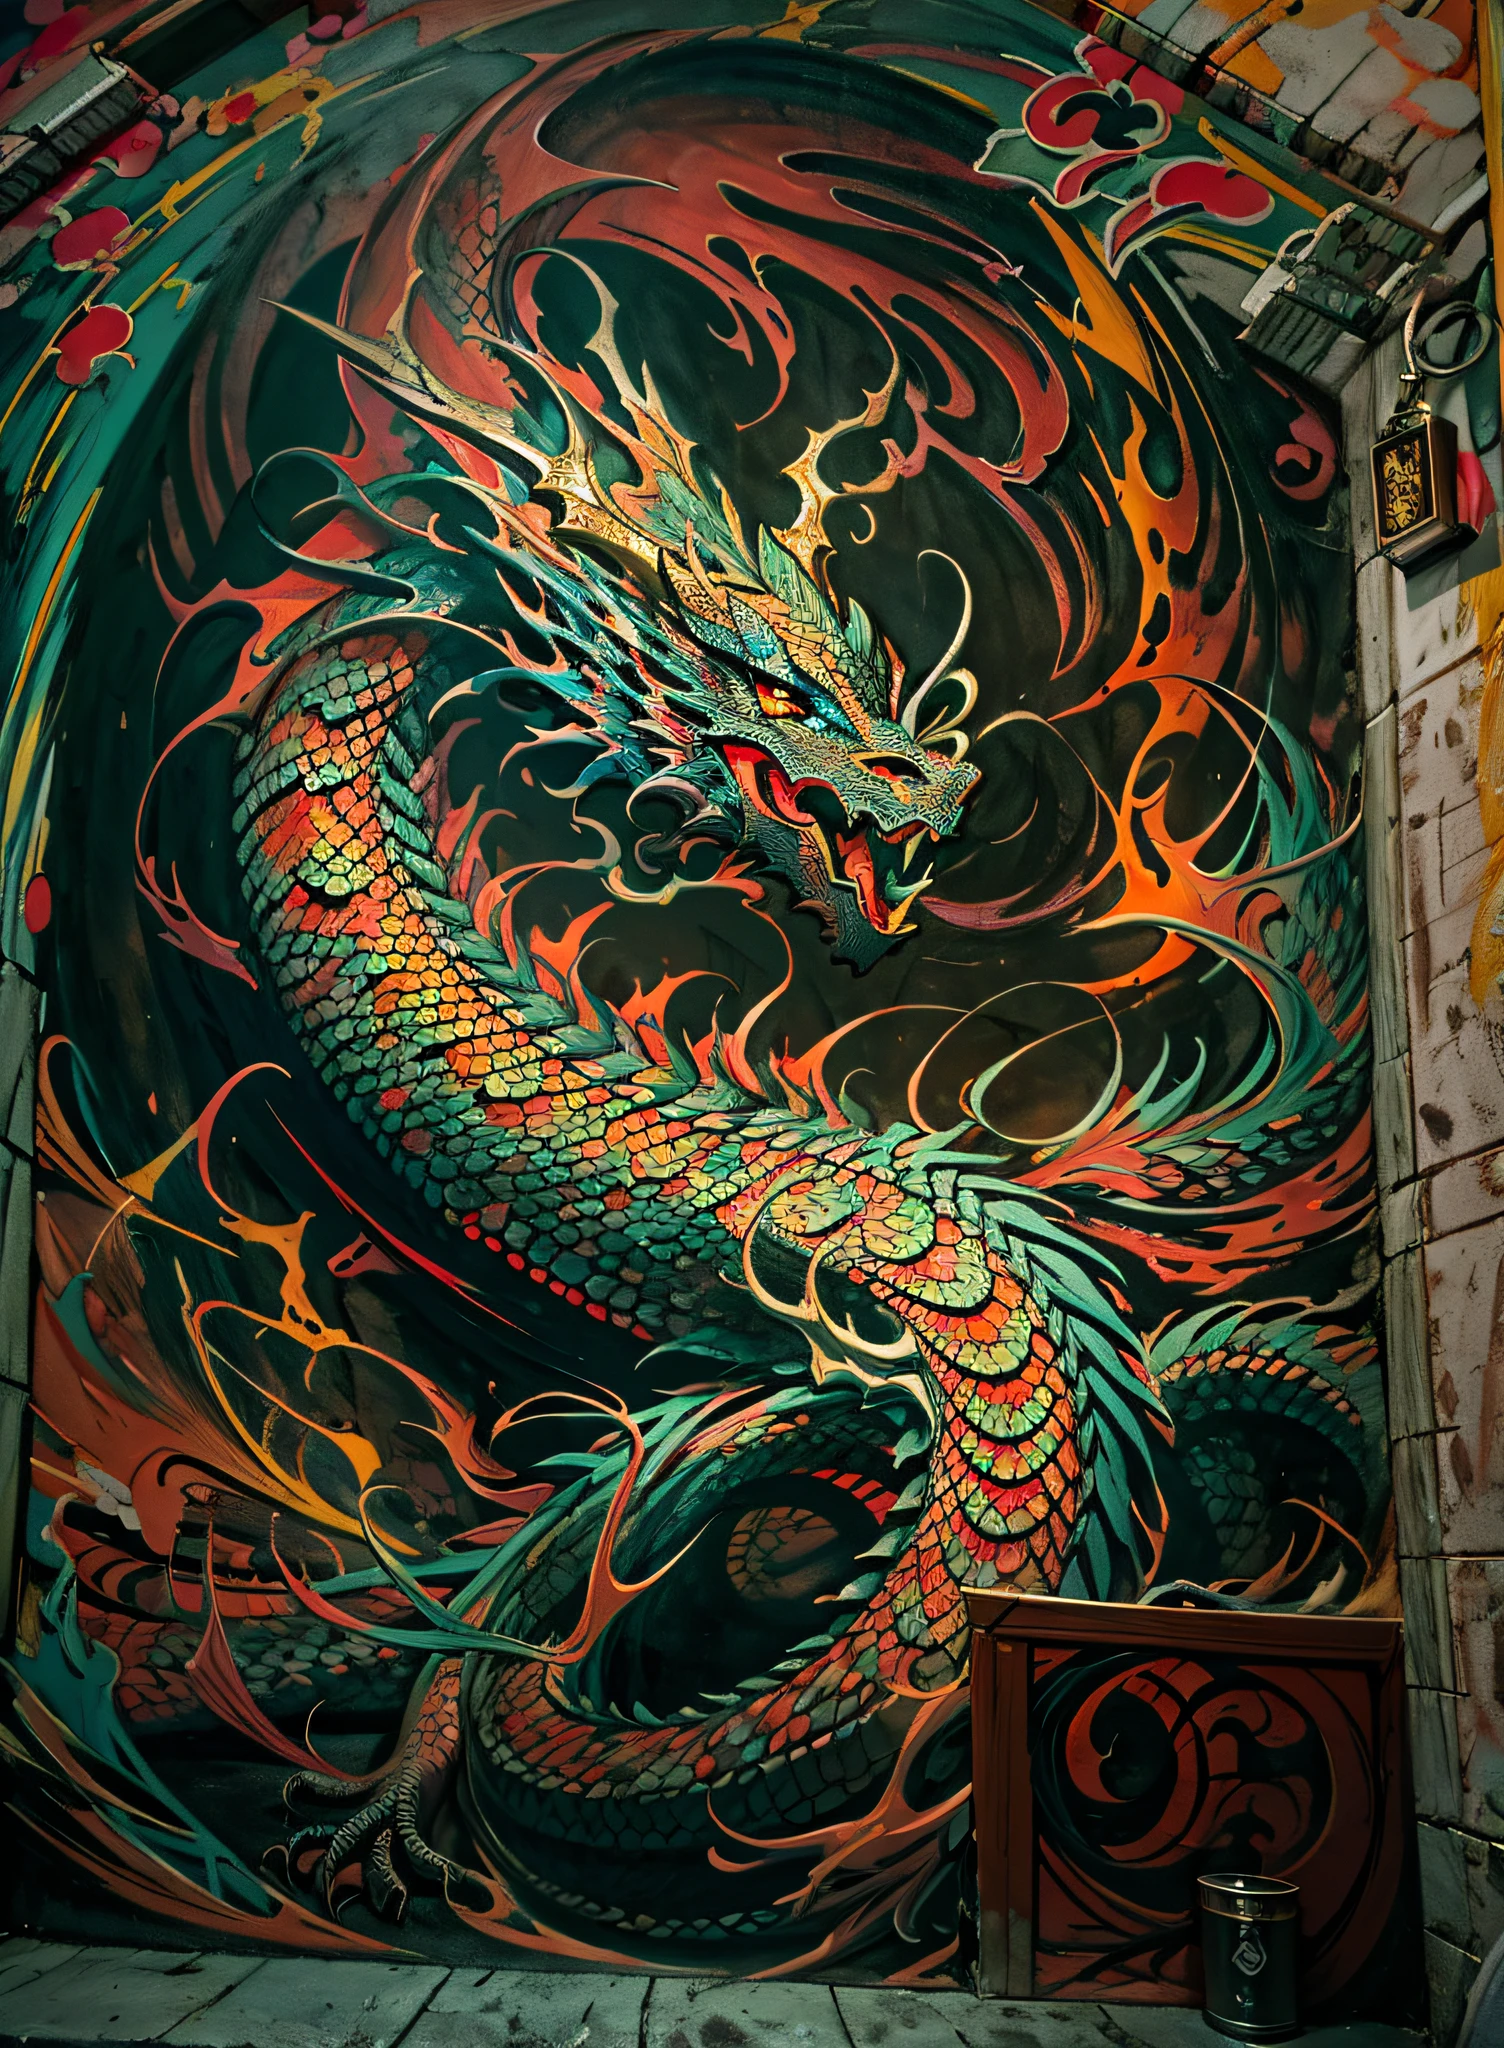 Dragão, claro-escuro,2.Cena cinematográfica 5D - filmada no escuro), Dragão Oriental Pintura mural de alta resolução,((muros de um castelo)), grafite colorido,((claro-escuro)) and vivid, cores vibrantes, pinceladas expressivas, vibe de arte de rua.claro-escuro,2.5D.